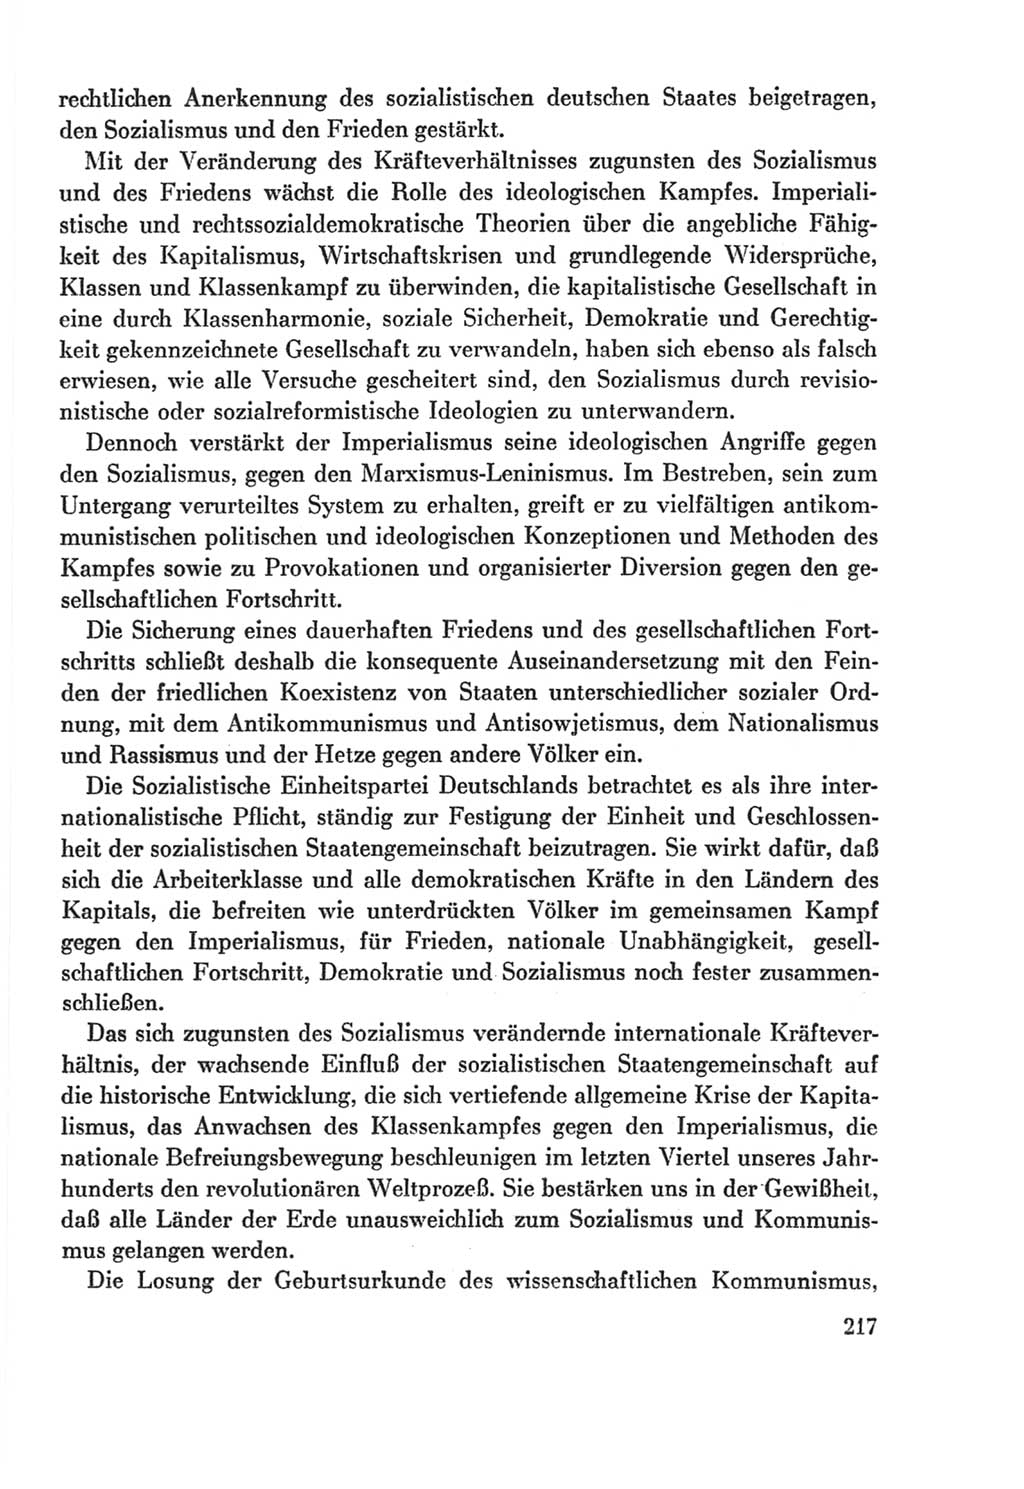 Protokoll der Verhandlungen des Ⅸ. Parteitages der Sozialistischen Einheitspartei Deutschlands (SED) [Deutsche Demokratische Republik (DDR)] 1976, Band 2, Seite 217 (Prot. Verh. Ⅸ. PT SED DDR 1976, Bd. 2, S. 217)